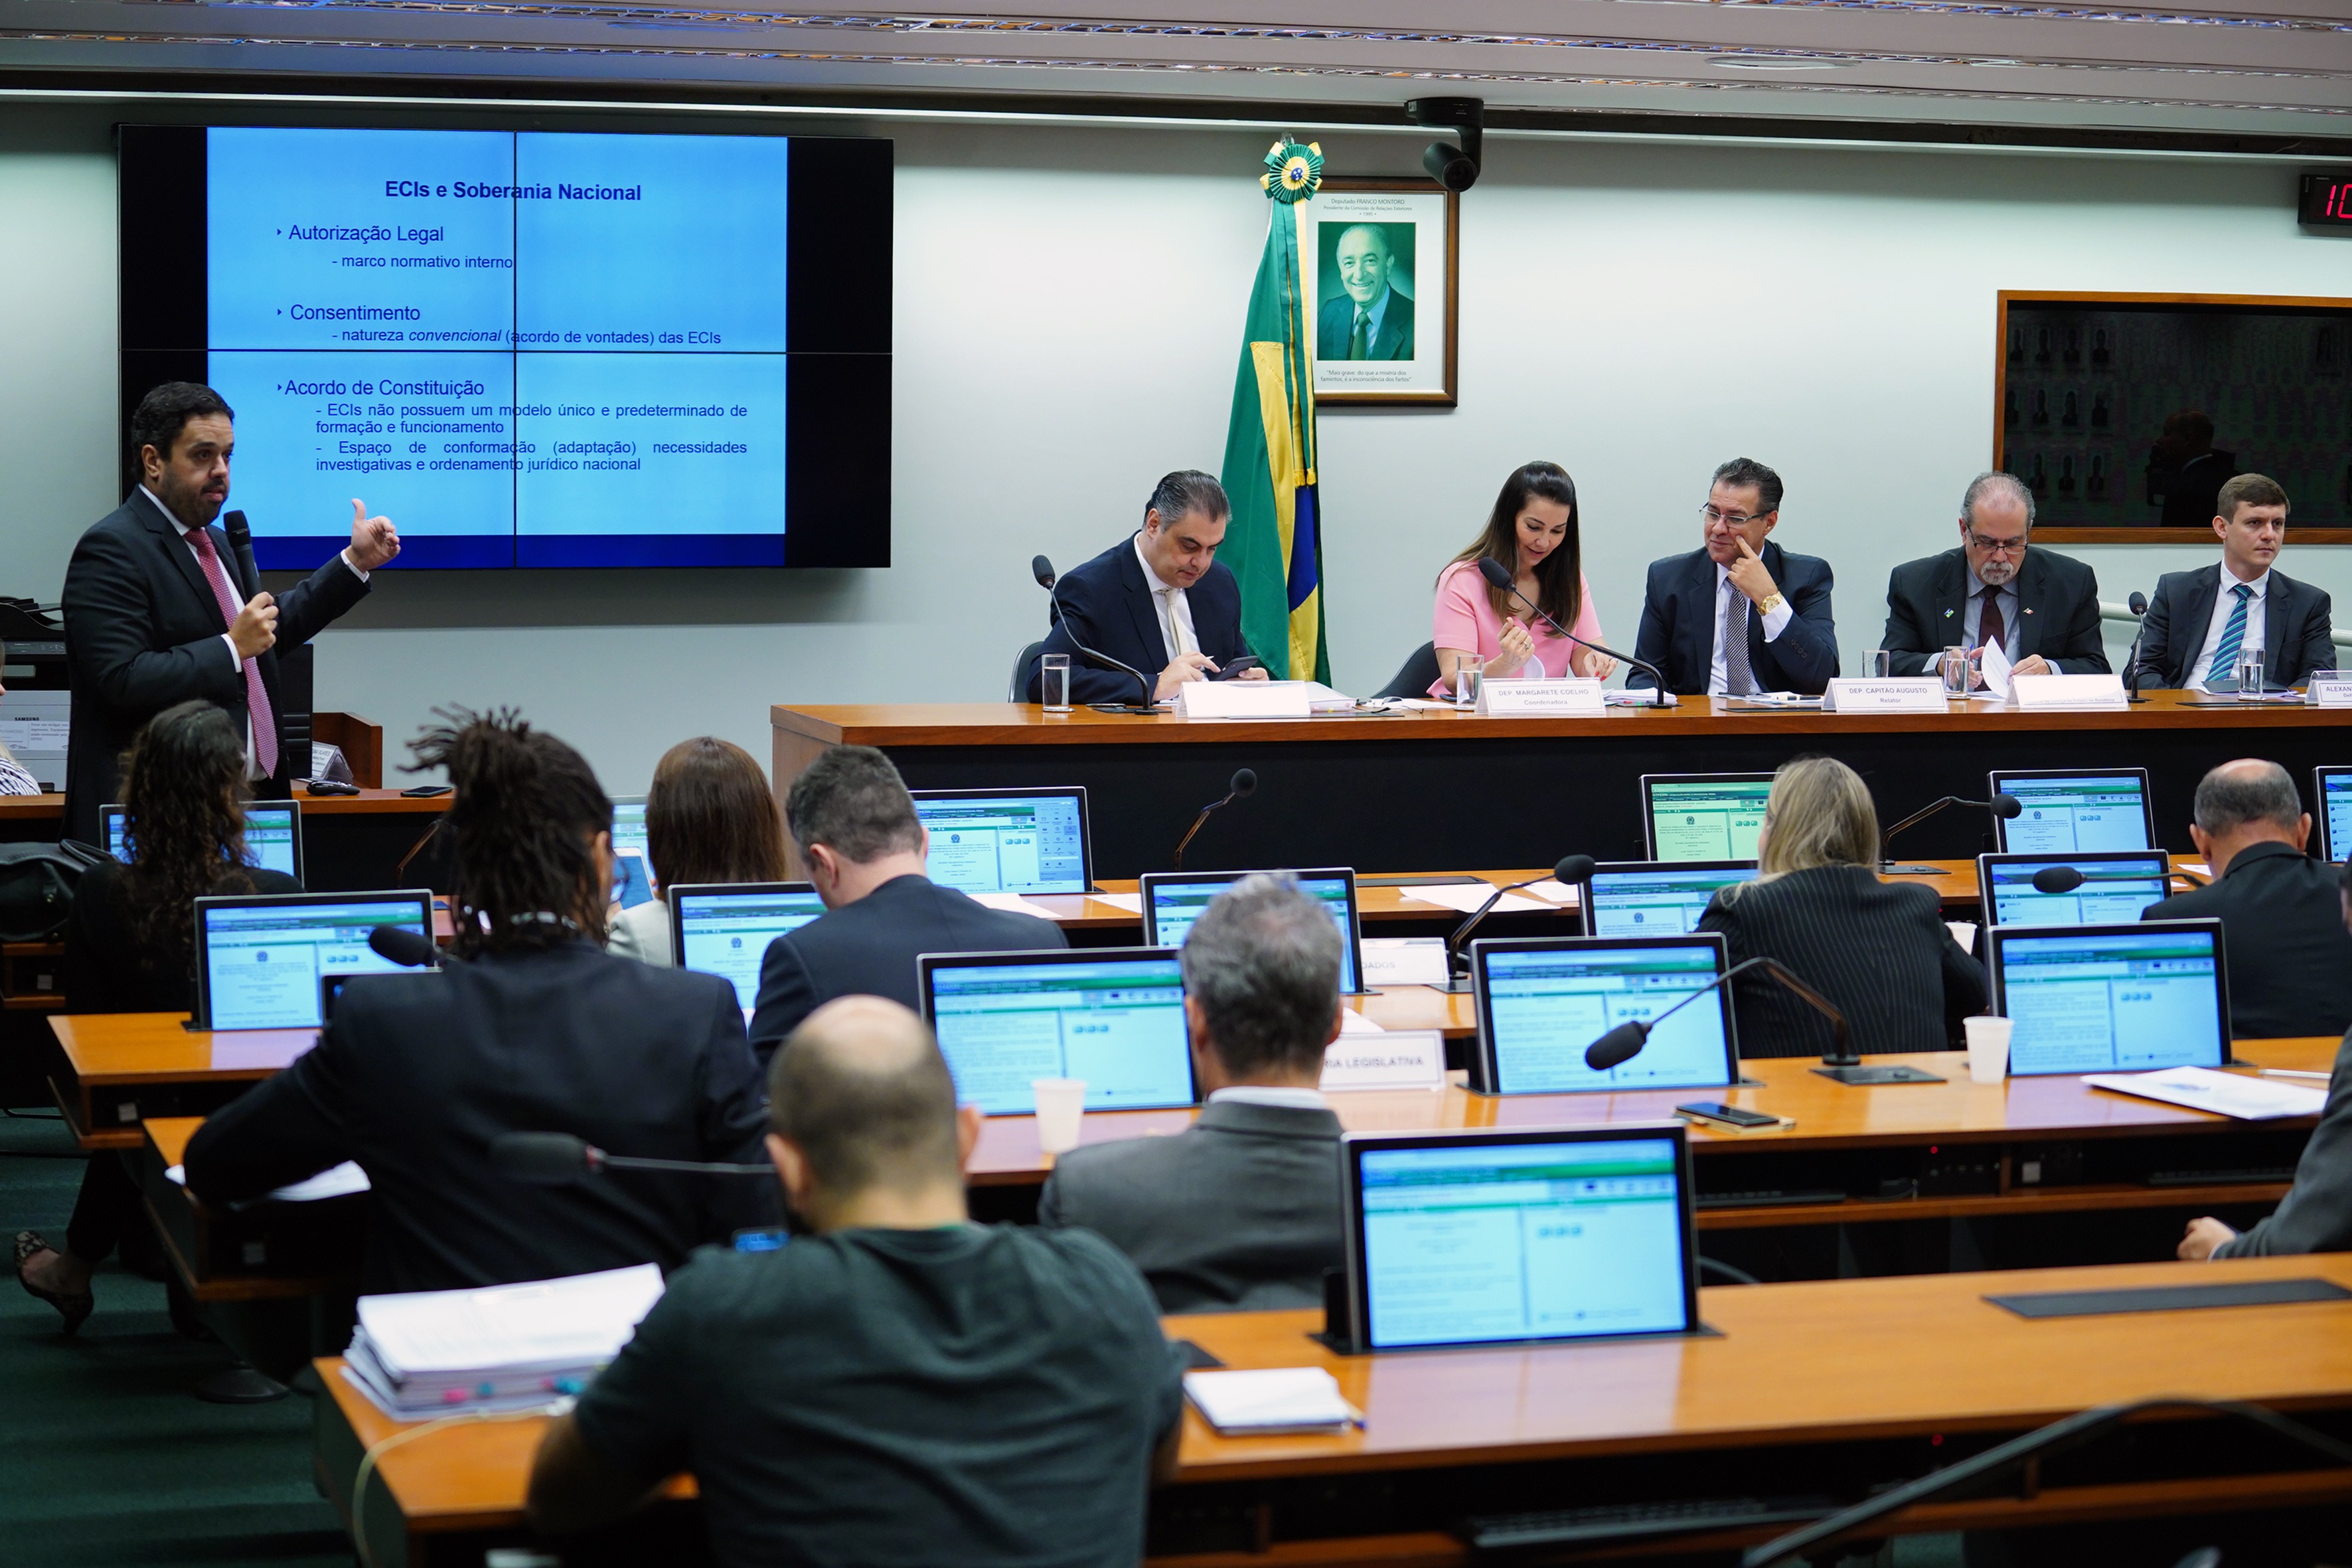 Pablo Valadares/Câmara dos Deputados / Audiência pública sobre os temas propostos no Roteiro de TrabalhoDebate foi promovido pelo grupo de trabalho da Câmara que analisa as propostas